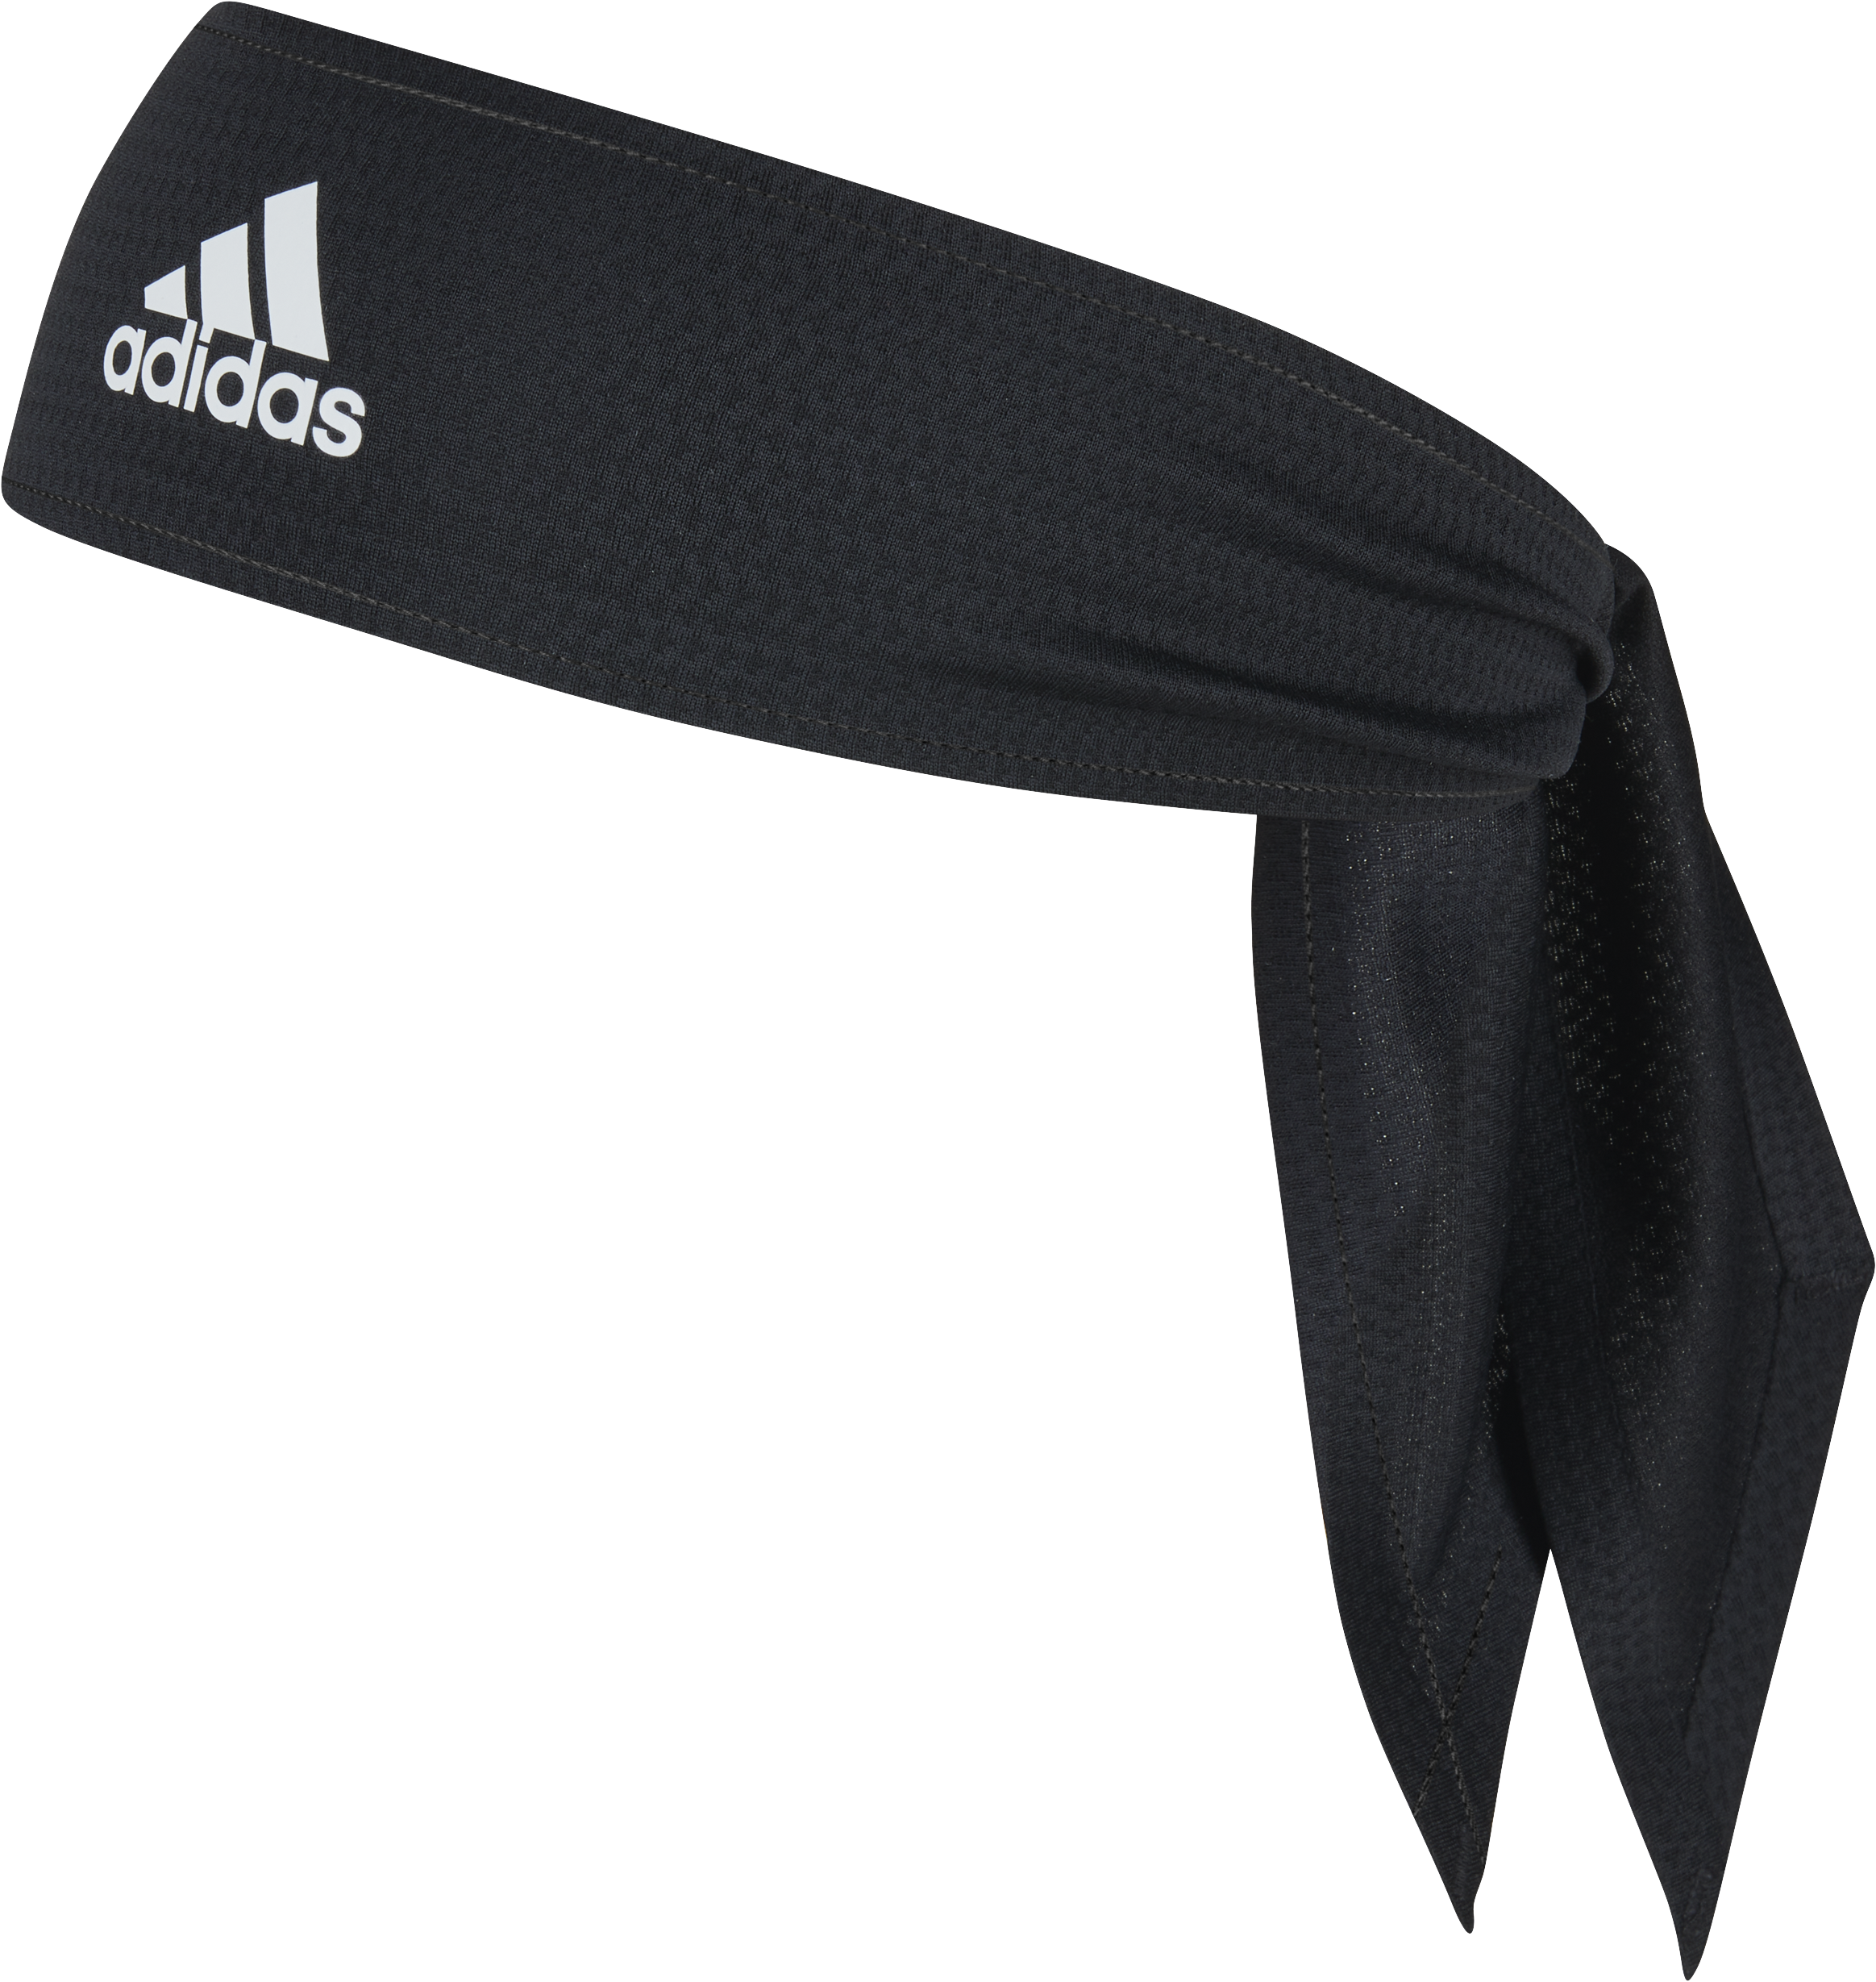 Adidas Aeroready Tieband (Black)